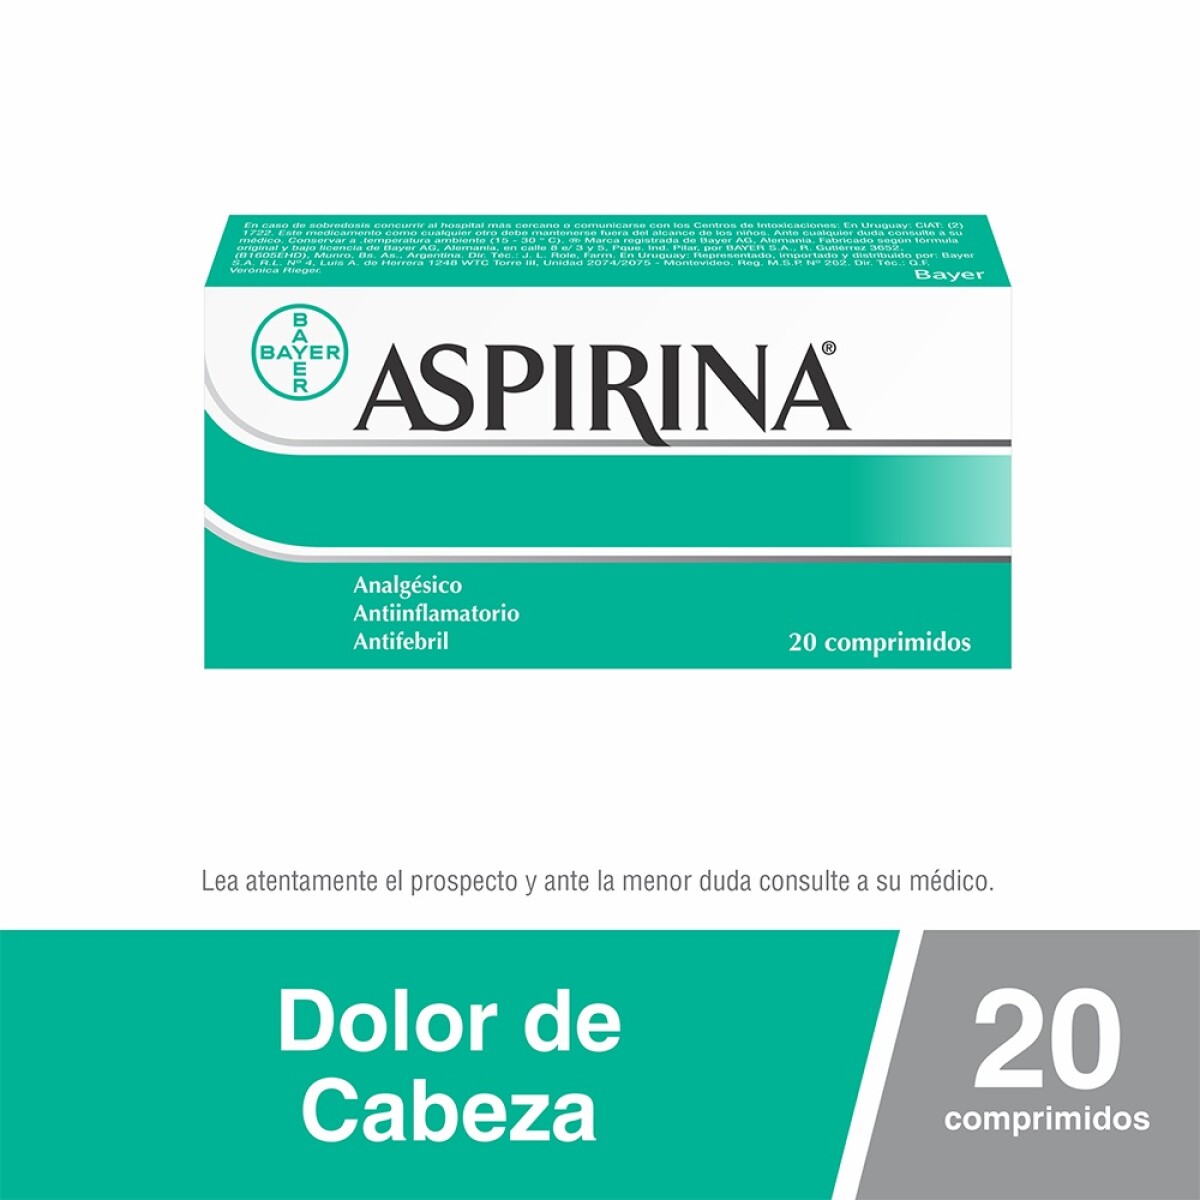 Aspirina Bayer Analgésico, Antiinflamatorio y Antifebril con Ácido Acetilsalicílico 500mg x 20 Comprimidos 